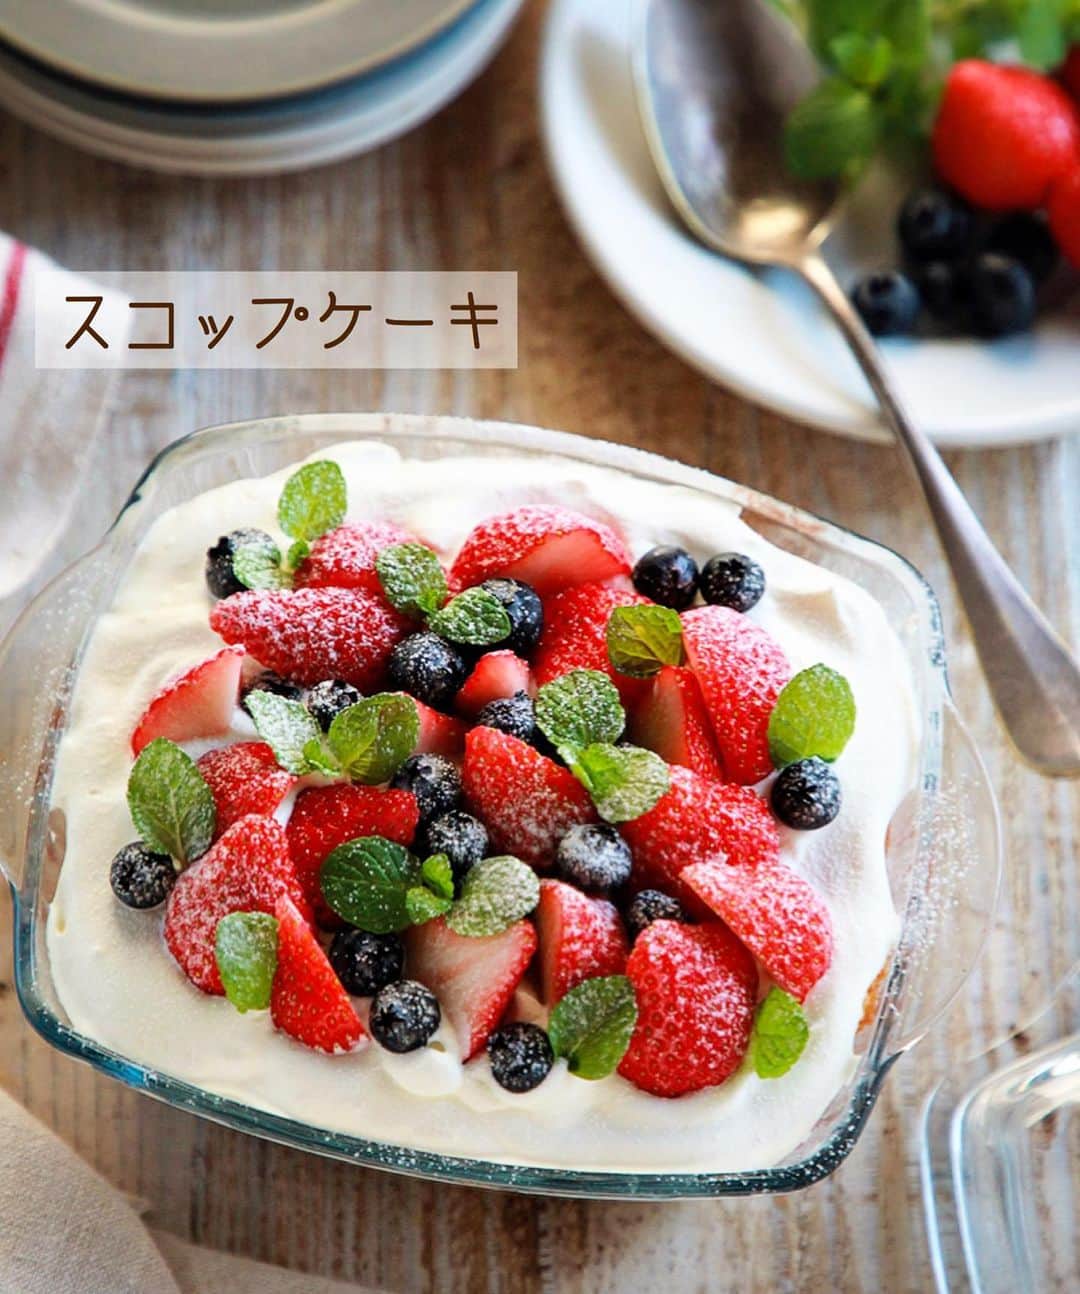 Mizuki【料理ブロガー・簡単レシピ】さんのインスタグラム写真 - (Mizuki【料理ブロガー・簡単レシピ】Instagram)「・﻿ 【#レシピ 】ーーーーーーーー﻿ ♡超簡単♡スコップケーキ♡﻿ ーーーーーーーーーーーーーー﻿ ﻿ ﻿ ﻿ おはようございます(*^^*)﻿ ﻿ 今日ご紹介させていただくのは﻿ クリスマスにもおすすめの﻿ \\ スコップケーキ //﻿ ﻿ 市販のスポンジケーキに﻿ クリームとフルーツを重ねるだけで﻿ 超簡単に作れますよ〜♡﻿ ﻿ クリームを綺麗に塗る必要もなく﻿ フルーツも適当に飾ればOK！！﻿ 容器の大きさなど記載していますが﻿ 難しく考えずにお試し下さいね(*^^*)﻿ (ブログでは2014年にご紹介しています✨)﻿ ﻿ ﻿ ﻿ ＿＿＿＿＿＿＿＿＿＿＿＿＿＿＿＿＿＿＿＿﻿ 【15×17×7cm容器一台分】﻿ 市販のスポンジケーキ(15cm)...1台﻿ 生クリーム...200ml﻿ 砂糖...大1.5﻿ ●熱湯...大2﻿ ●砂糖...大2﻿ ●(好みで)洋酒...小1﻿ 好みのフルーツ...適量﻿ (あれば)ミント・粉糖...各適量﻿ ﻿ 1.●を混ぜてシロップを作る。スポンジは2枚にスライスする。フルーツは食べやすく切る。ボウルに生クリームと砂糖を入れて泡立てる(7〜8分立て)。﻿ 2.容器にスポンジ1枚を適量にちぎって入れ→シロップの半量を塗る→生クリームの半量をのせる→フルーツの半量を散らす。これをもう一度繰り返す。﻿ 3.仕上げにミントを飾り、粉糖を振る。﻿ ￣￣￣￣￣￣￣￣￣￣￣￣￣￣￣￣￣￣￣￣﻿ ﻿ ﻿ ﻿ 《ポイント》﻿ ♦︎お子さんが召し上がる場合はシロップの材料をレンジで加熱し、アルコールを飛ばして下さい♩(洋酒はなくてもOK！)﻿ ♦︎フルーツは缶詰やバナナを使っても♩缶詰のフルーツは汁気をしっかり切って下さい☆﻿ ♦︎ざっくりスプーンですくってサーブします♩﻿ ﻿ ﻿ ﻿ ﻿ ﻿ ﻿ ﻿ ﻿ 📕新刊予約開始しました📕﻿ 【ラクしておいしい！#1品晩ごはん 】﻿ ￣￣￣￣￣￣￣￣￣￣￣￣￣￣￣￣￣﻿ 私たちだってヘトヘトな日がある•••﻿ 毎日何品も作っていられない•••﻿ もうごはんに悩みたくない😢﻿ そう思うことってありませんか？﻿ そんな時、1品ごはんはいかがでしょう？﻿ というご提案です✨﻿ ﻿ ﻿ 【1品ごはん】は﻿ 副菜いらずで全てがシンプル！﻿ ￣￣￣￣￣￣￣￣￣￣￣￣￣￣￣￣￣￣﻿ 一品つくるだけでいいから﻿ 献立を考えなくてよし！﻿ ￣￣￣￣￣￣￣￣￣￣￣￣￣￣￣￣￣￣﻿ 悩まない、疲れない、﻿ 気力や時間がなくてもなんとかなる！﻿ ￣￣￣￣￣￣￣￣￣￣￣￣￣￣￣￣￣￣﻿ そんな頼りになる﻿ 便利なお助けごはんです☺️💕﻿ (ハイライトに🔗貼っています✨)﻿ ￣￣￣￣￣￣￣￣￣￣￣￣￣￣￣￣￣﻿ ﻿ ﻿ ﻿ ﻿ ﻿ ⭐️発売中⭐️﻿ ＿＿＿＿＿＿＿＿＿＿＿＿＿＿＿＿＿＿﻿ しんどくない献立、考えました♩﻿ \15分でいただきます/﻿ 📕#Mizukiの2品献立 📕﻿ ﻿ 和食をもっとカジュアルに♩﻿ \毎日のごはんがラクになる/﻿ 📘#Mizukiの今どき和食 📘﻿ ﻿ ホケミレシピの決定版♩﻿ \はじめてでも失敗しない/﻿ 📙ホットケーキミックスのお菓子 📙﻿ ﻿ NHKまる得マガジンテキスト☆﻿ ホットケーキミックスで﻿ 📗絶品おやつ&意外なランチ📗﻿ ￣￣￣￣￣￣￣￣￣￣￣￣￣￣￣￣￣￣﻿ ﻿ ﻿ ﻿ ＿＿＿＿＿＿＿＿＿＿＿＿＿＿＿＿＿＿﻿ レシピを作って下さった際や﻿ レシピ本についてのご投稿には﻿ タグ付け( @mizuki_31cafe )して﻿ お知らせいただけると嬉しいです😊💕﻿ ￣￣￣￣￣￣￣￣￣￣￣￣￣￣￣￣￣￣﻿ ﻿ ﻿ ﻿ ﻿ #スコップケーキ#ケーキ#クリスマス#クリスマスケーキ#Mizuki#簡単レシピ#時短レシピ#節約レシピ#料理#フーディーテーブル#マカロニメイト#おうちごはん#デリスタグラマー#料理好きな人と繋がりたい#食べ物#料理記録#おうちごはんlover#写真好きな人と繋がりたい#foodpic#cooking#recipe#lin_stagrammer#foodporn#yummy#f52grams#スコップケーキm」12月20日 8時44分 - mizuki_31cafe